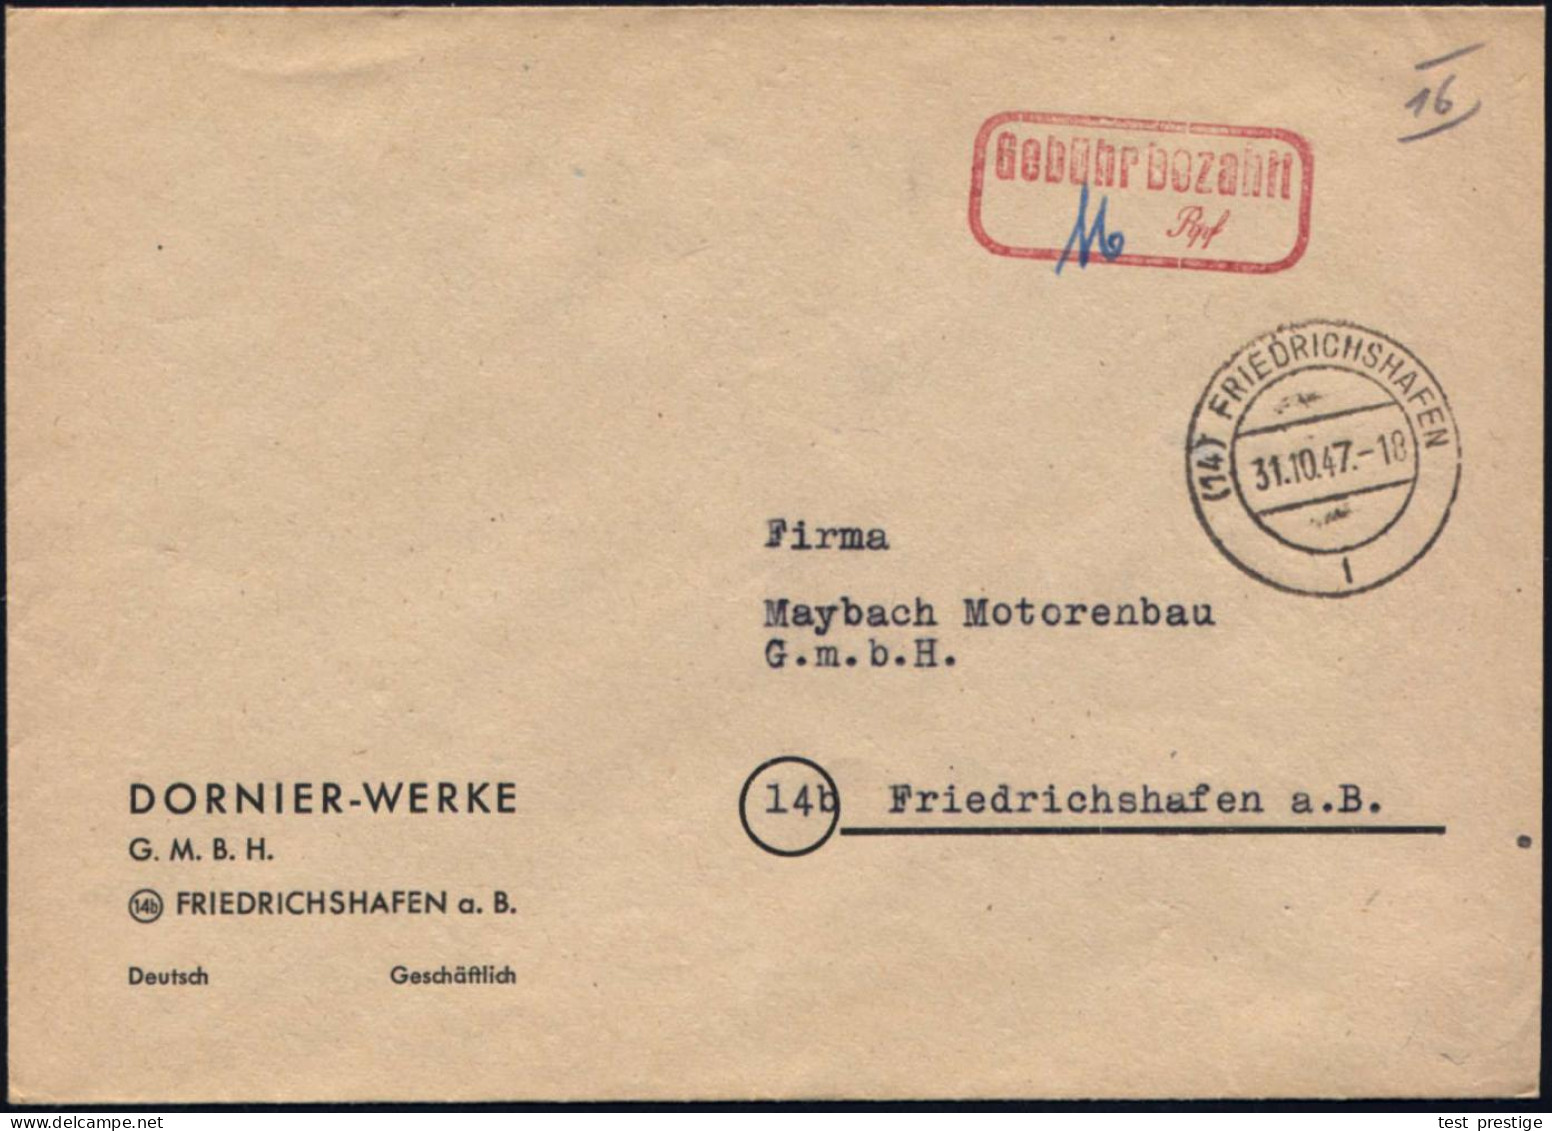 (14) FRIEDRICHSHAFEN/ L 1947 (31.10.) 2K-Steg + Roter Ra2: Gebühr Bezahlt/...Rpf Auf Firmen-Bf: DORNIER-WERKE GMBH + Hs. - Aviones